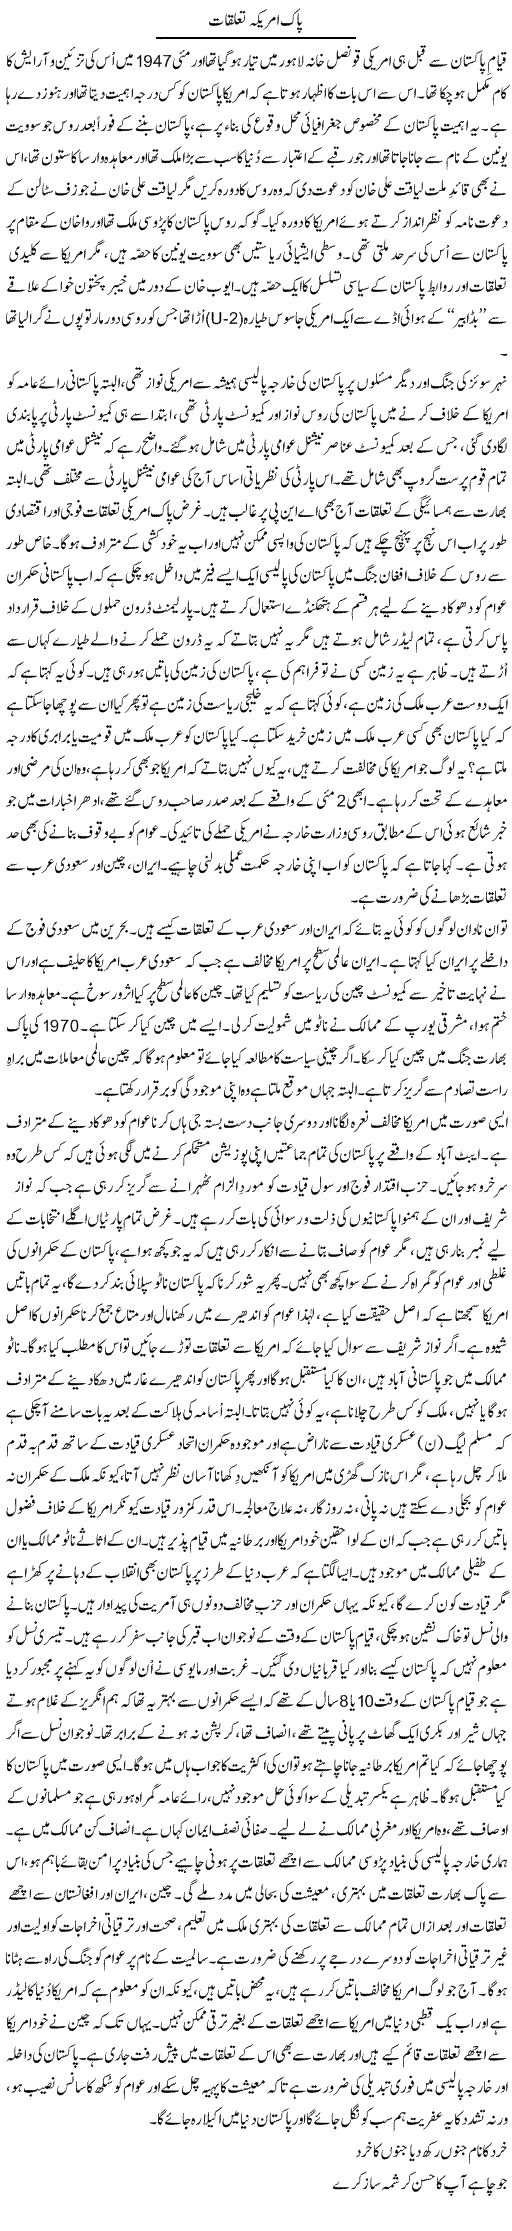 Pak US Relations Express Column Anees Baqir 18 May 2011